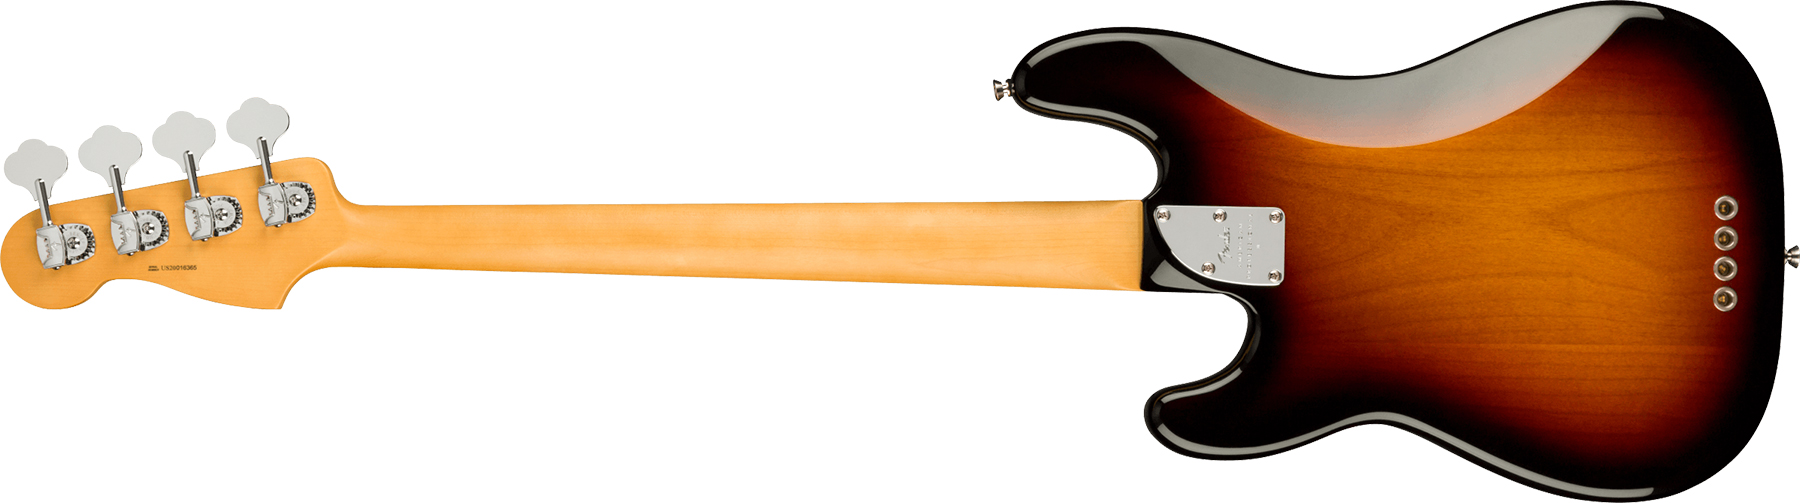 Fender Precision Bass American Professional Ii Usa Mn - 3-color Sunburst - Bajo eléctrico de cuerpo sólido - Variation 1